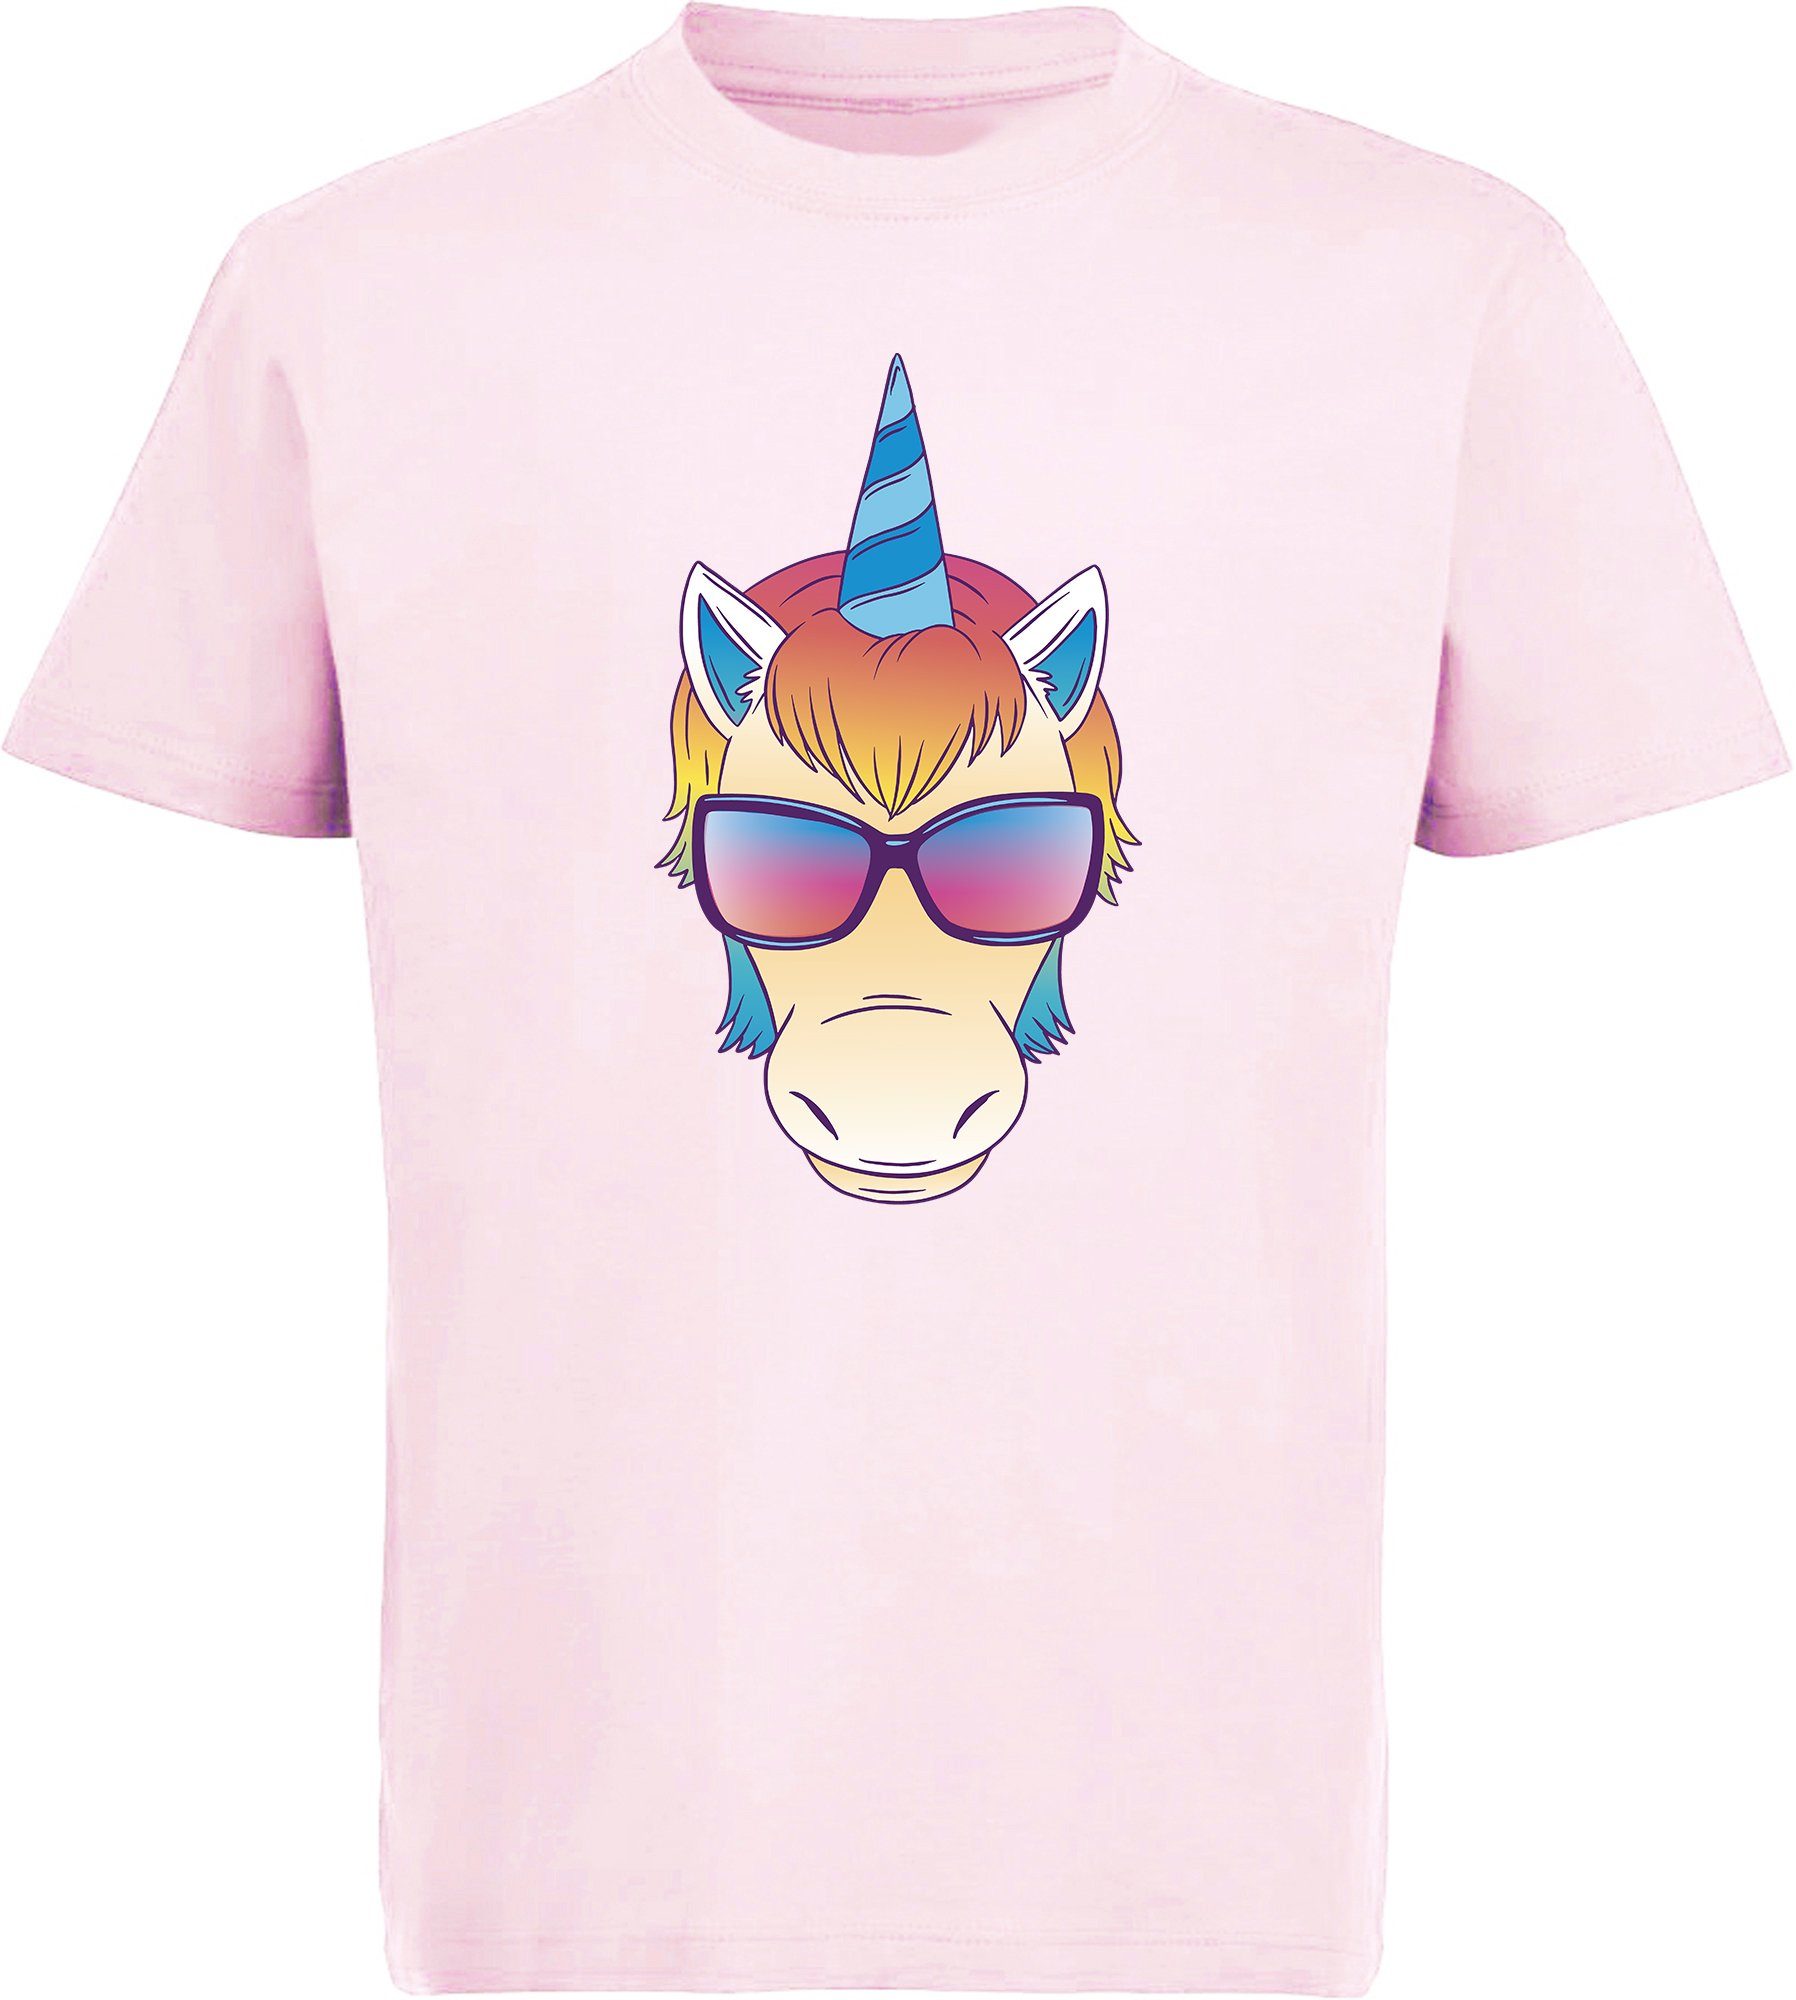 mit MyDesign24 i255 Aufdruck, Einhorn Kopf Print Baumwollshirt bedruckt Shirt - mit Sonnenbrille rosa Kinder T-Shirt